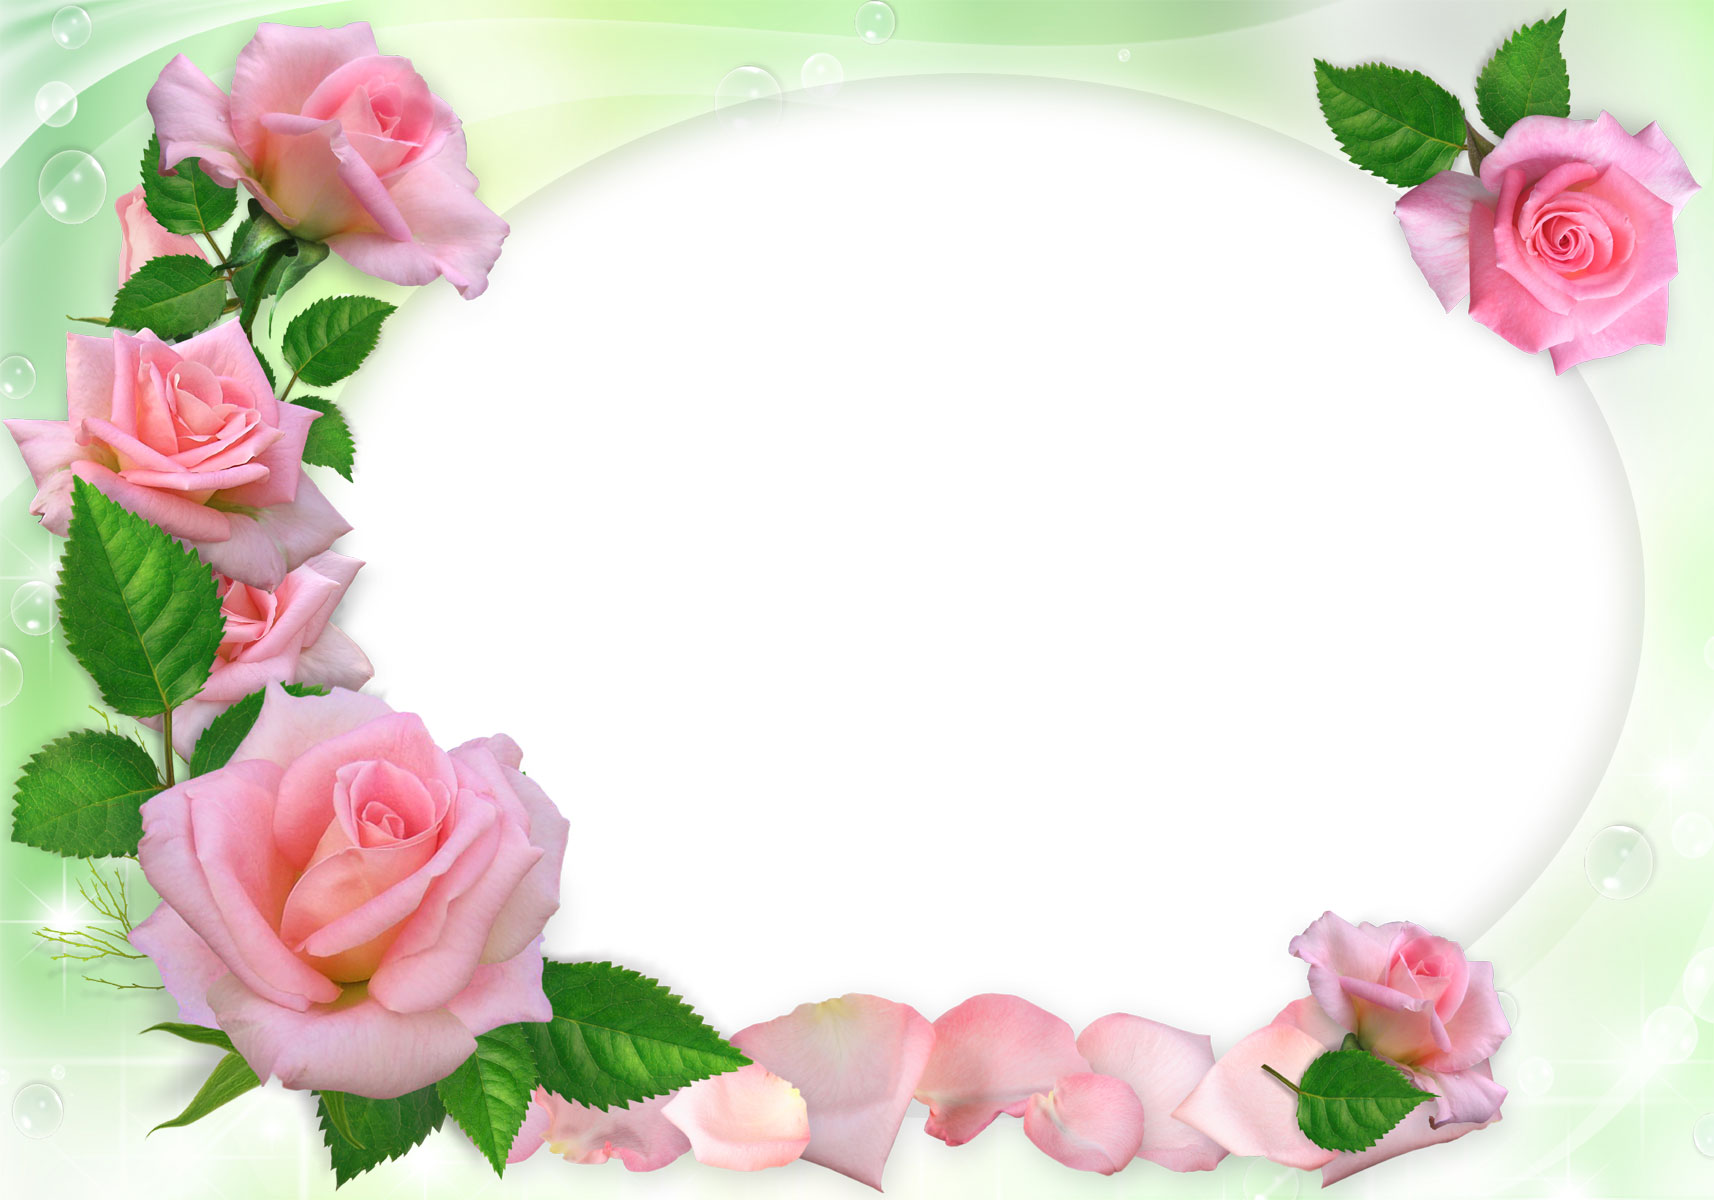 バラの写真 画像 フリー素材 No 1085 ピンクのバラ 花びら